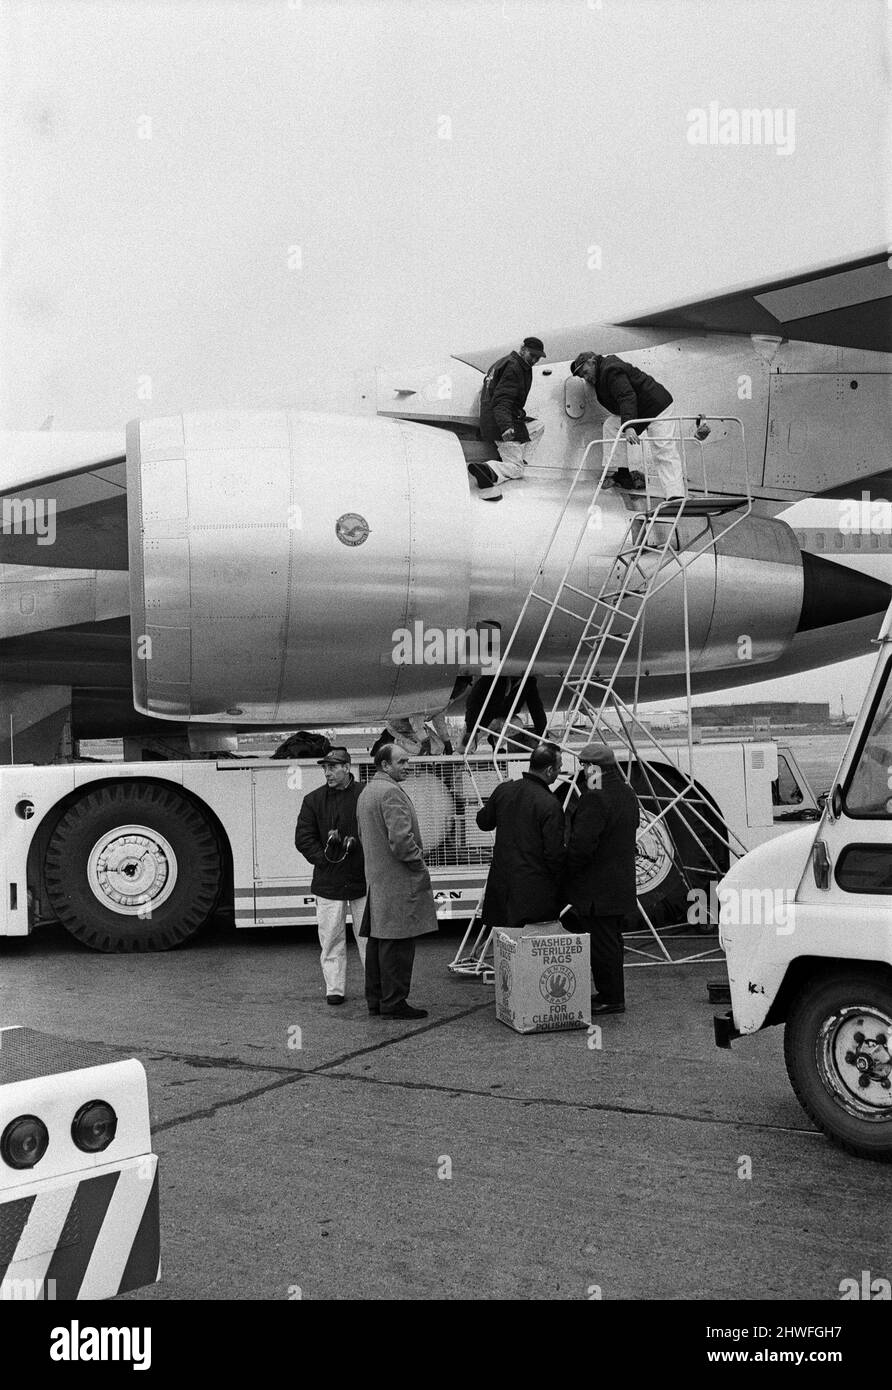 Le Boeing 747 de 361 passagers arrive à l'aéroport de Heathrow. Le premier Boeing 747 Jumbo à voler vers la Grande-Bretagne est arrivé en toute sécurité de New York. Le jet géant a une vitesse de croisière de 625 mph et devrait réduire le trajet de New York à Londres de 30 minutes. 12th janvier 1970. Banque D'Images